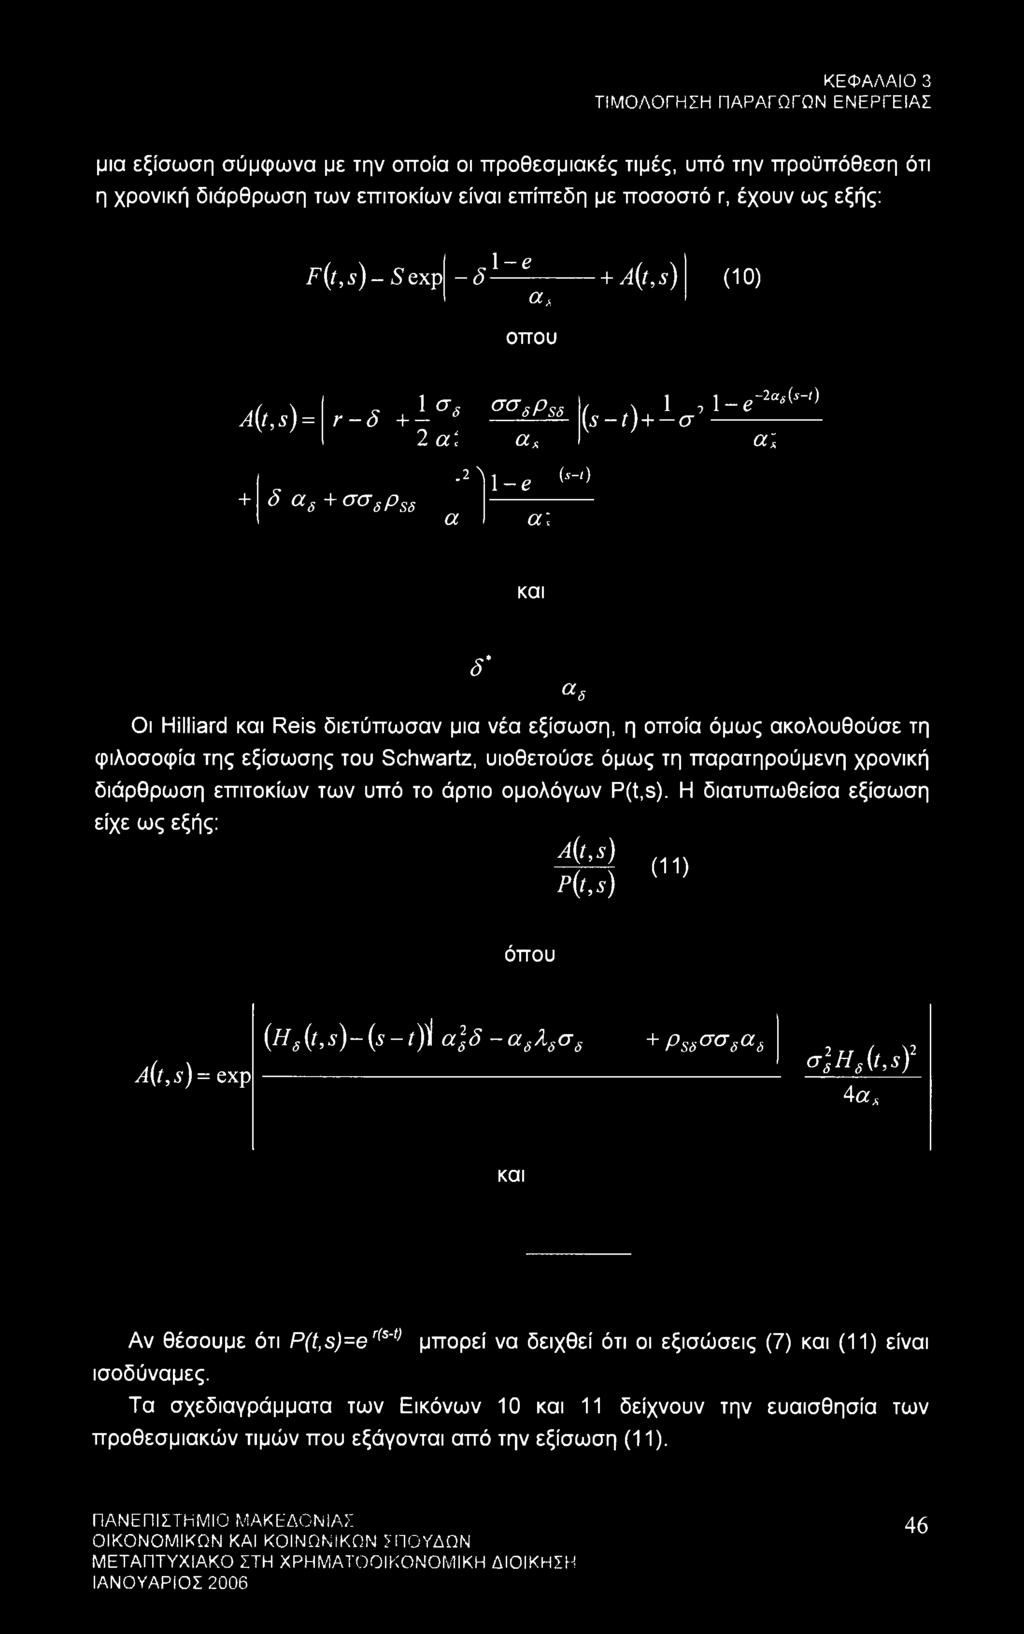 a. a.2 Λ 1-e {*-<) a: -2ae(s-t) 1, 1-e (s-t)+-a a; και δ' Οι Hilliard και Reis διετύπωσαν μια νέα εξίσωση, η οποία όμως ακολουθούσε τη φιλοσοφία της εξίσωσης του Schwartz, υιοθετούσε όμως τη